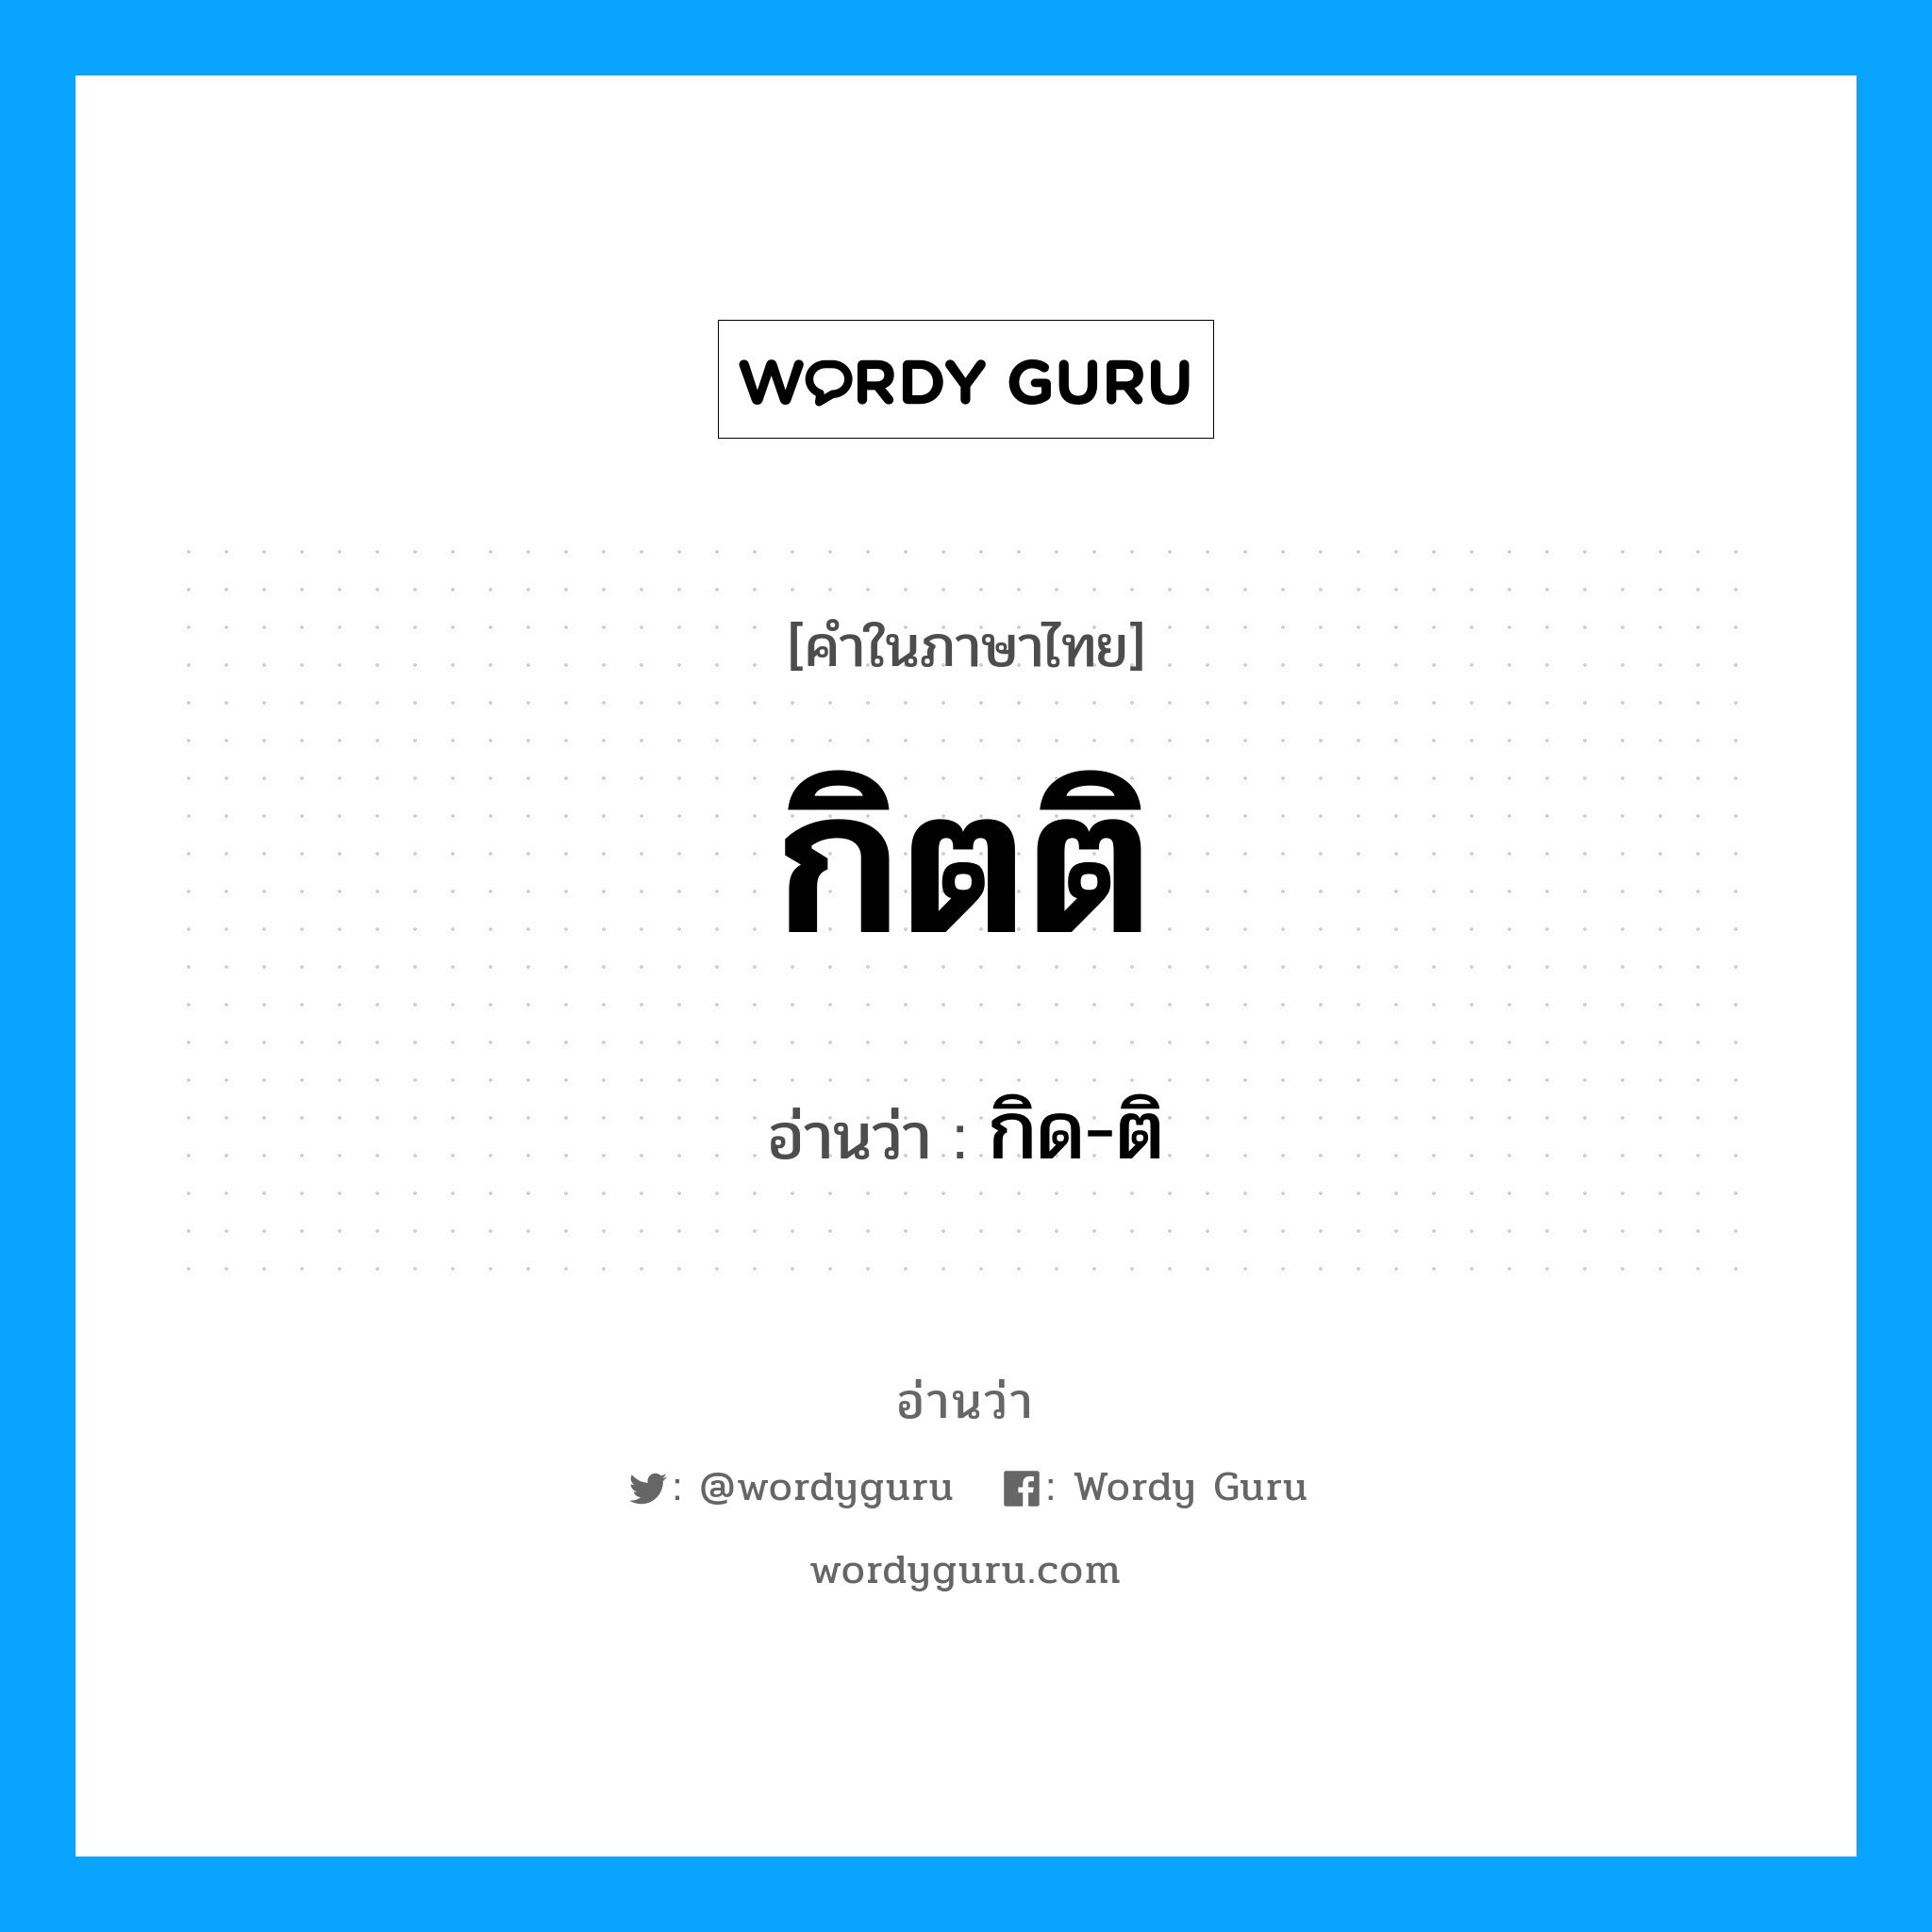 กิด-ติ เป็นคำอ่านของคำไหน?, คำในภาษาไทย กิด-ติ อ่านว่า กิตติ